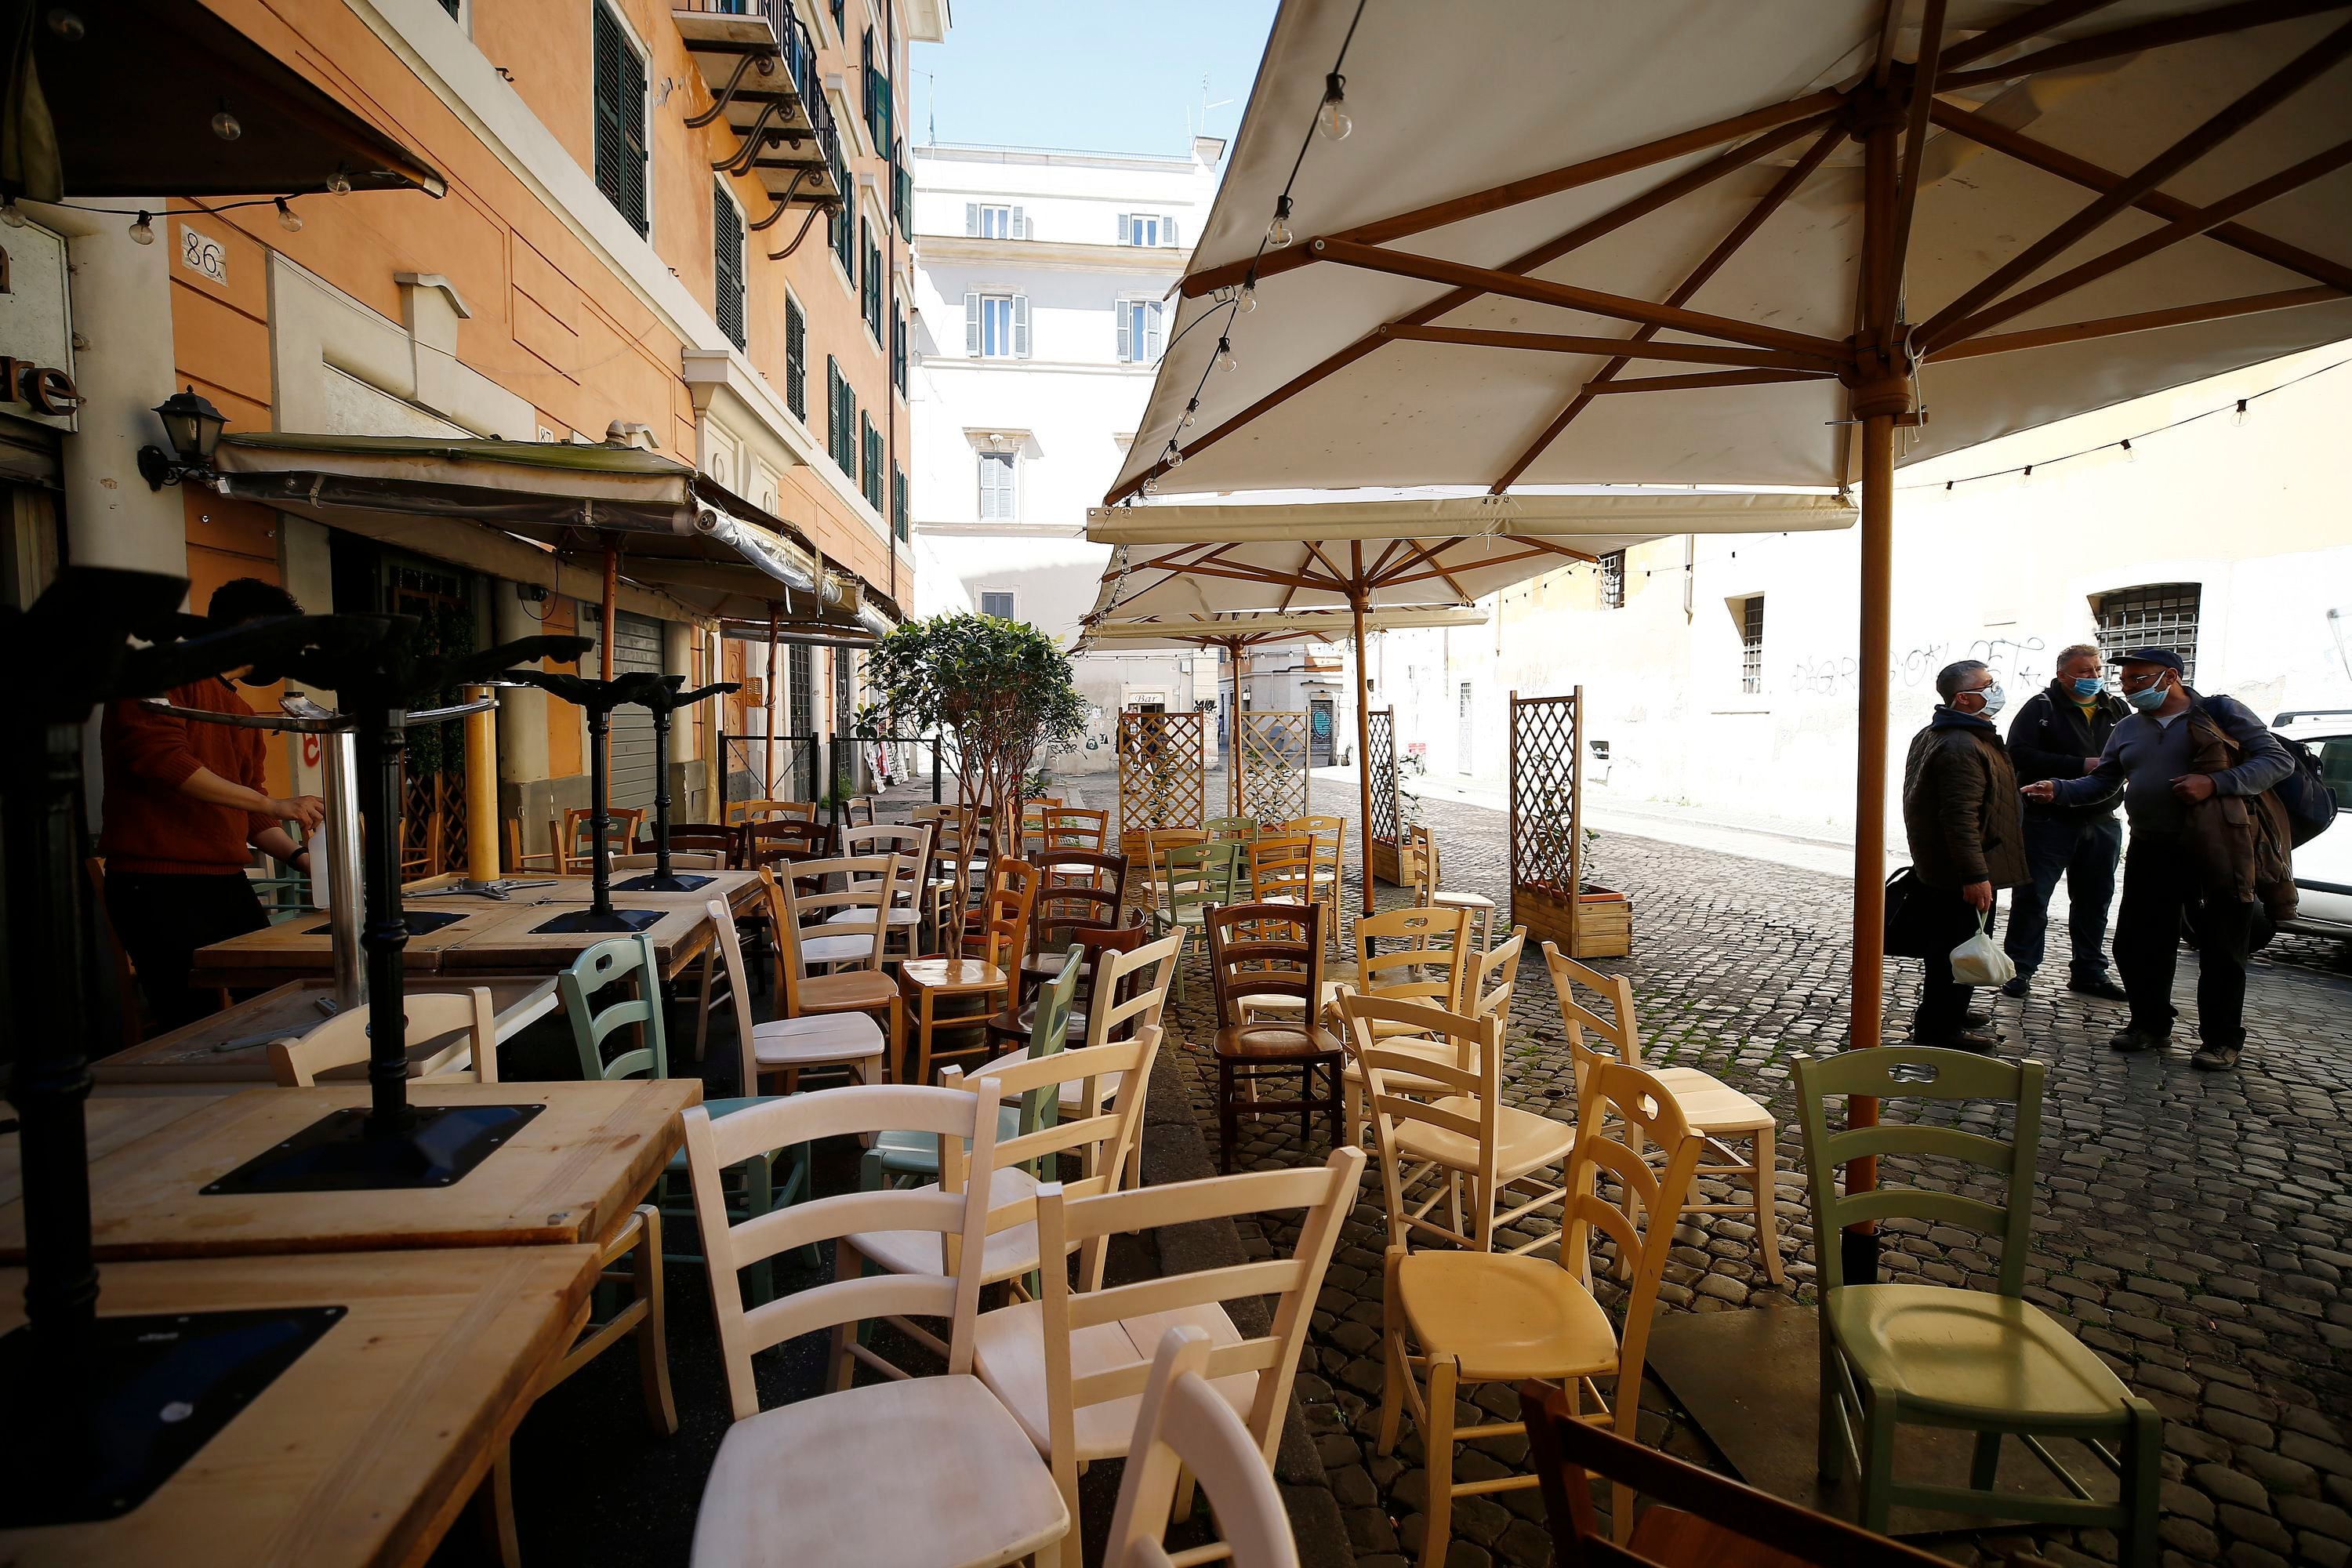 Sillas y mesas preparadas ante un restaurante antes de la reapertura el lunes tras el levantamiento de las restricciones de COVID-19 en Roma, el viernes 23 de abril de 2021. (Cecilia Fabiano/LaPresse via AP)